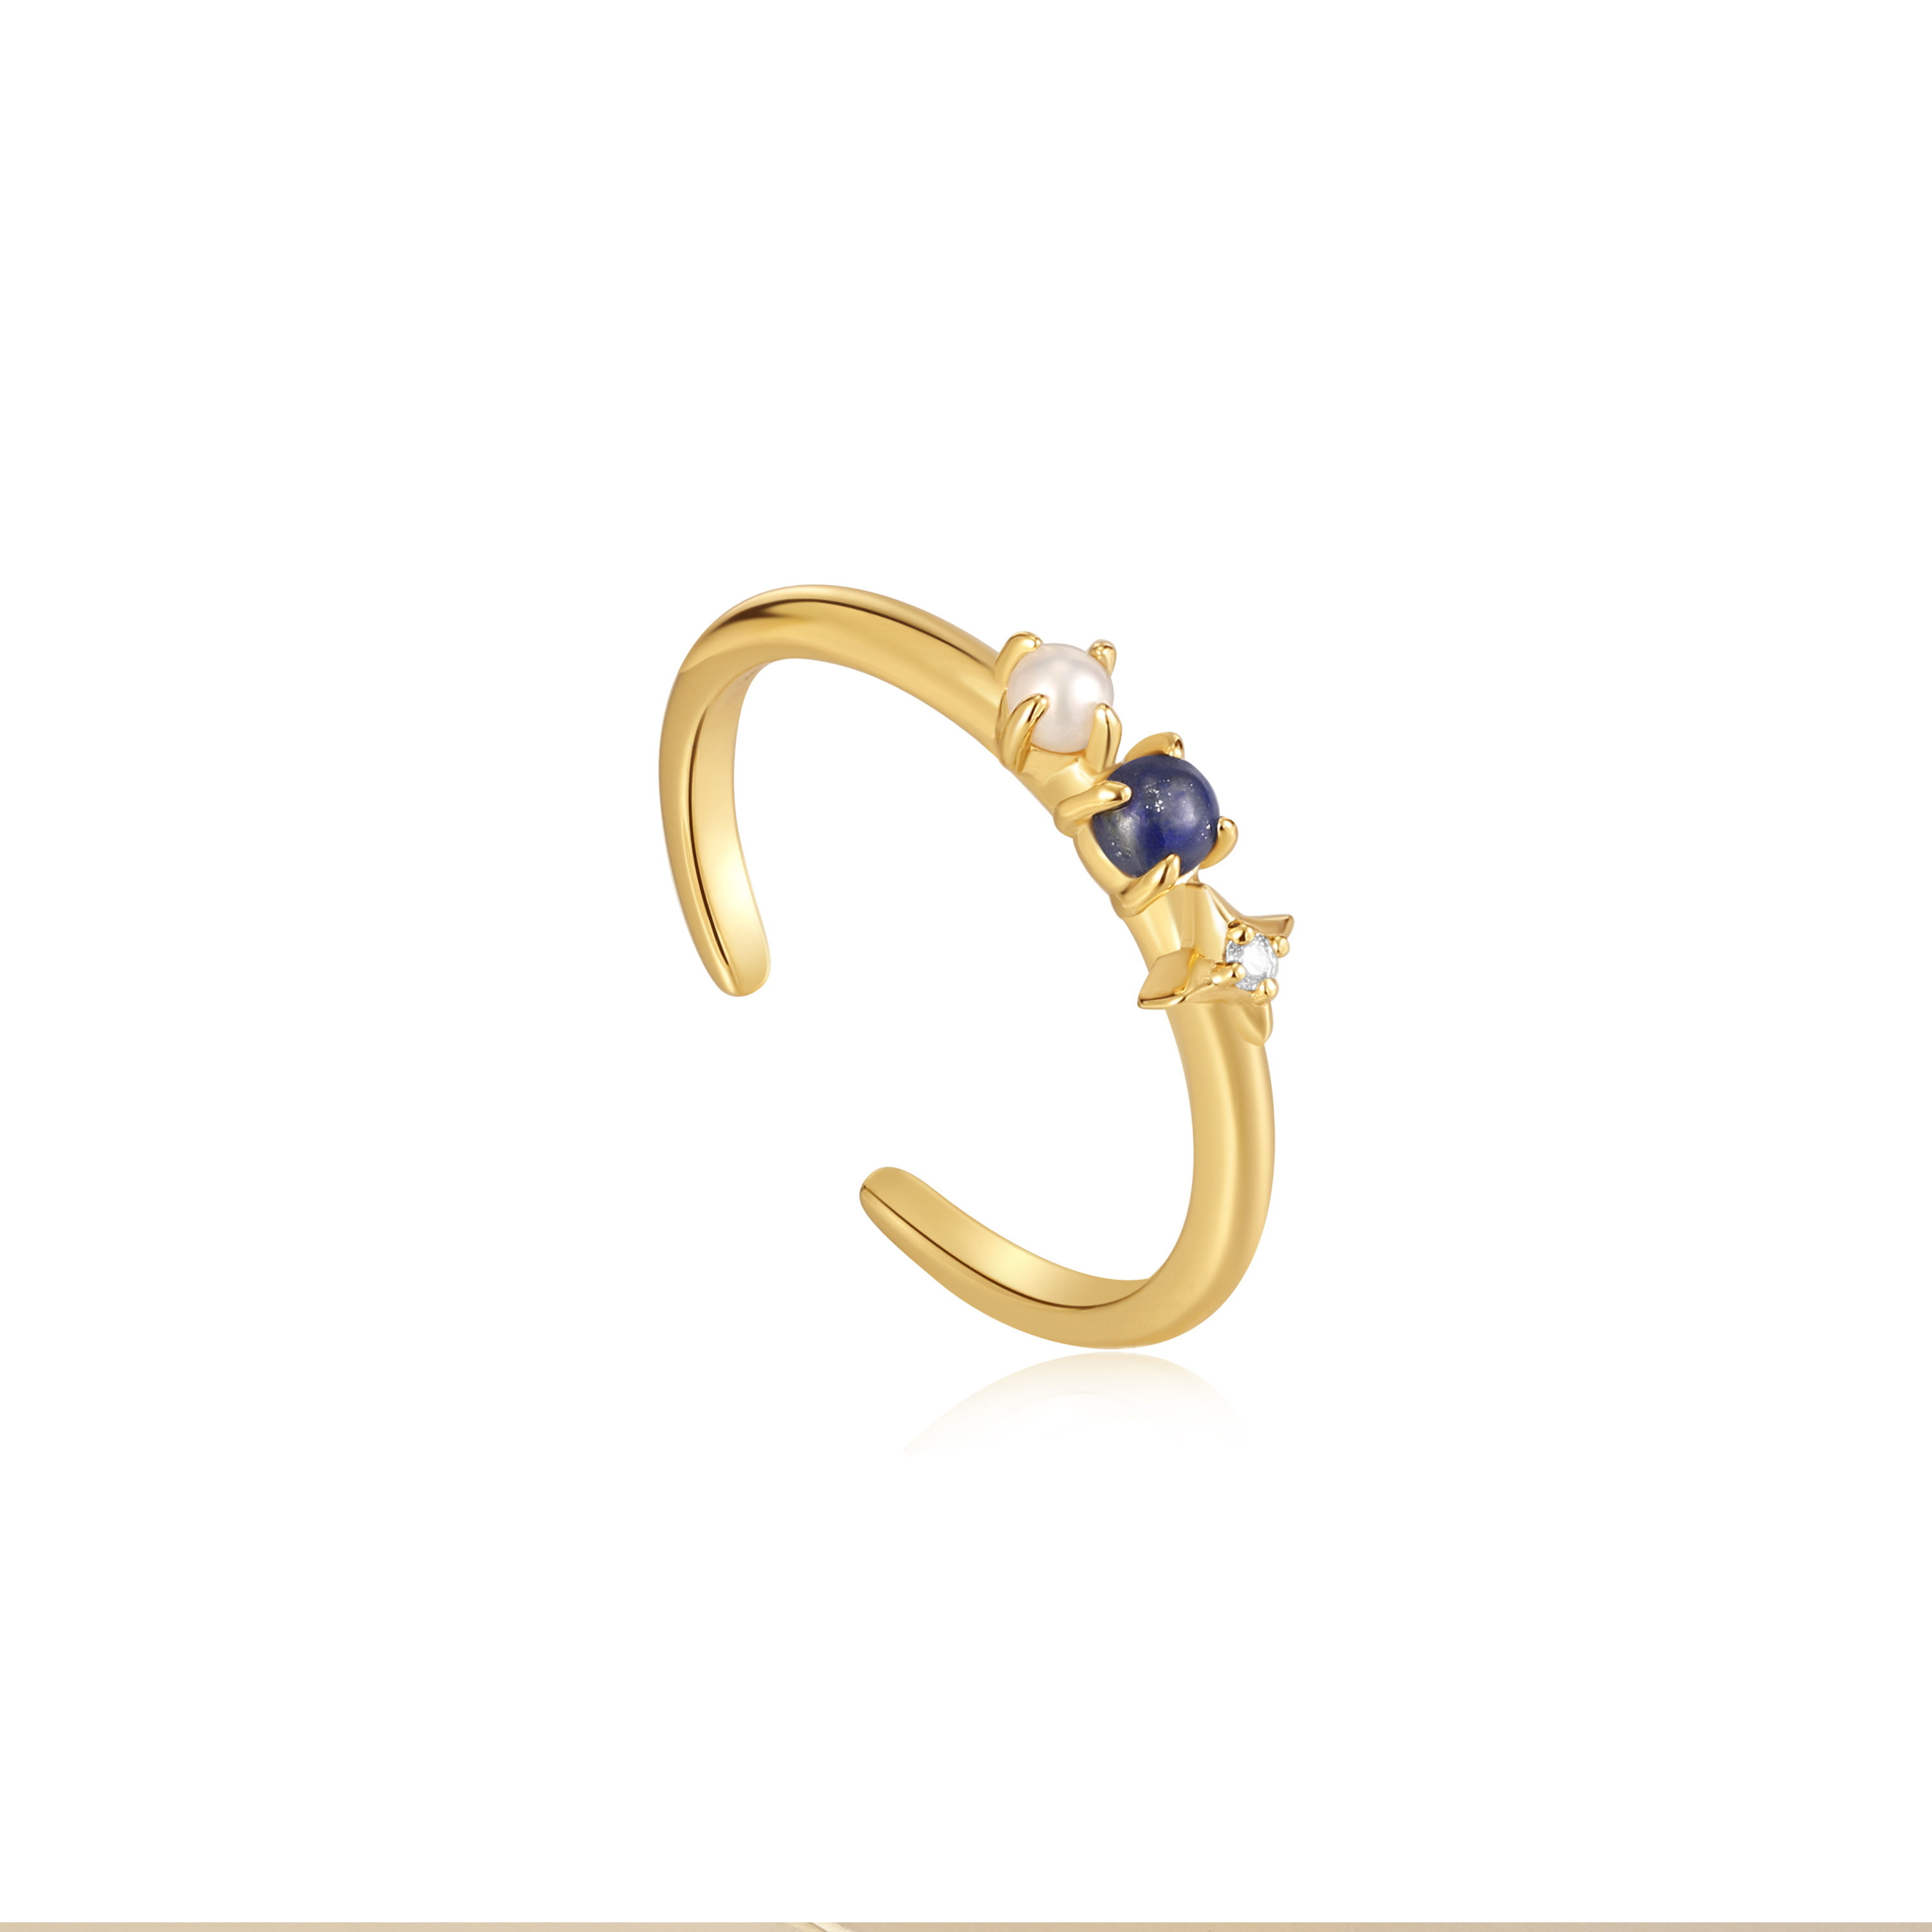 Striking 18 Karat Gold And Sapphire Petal Ring